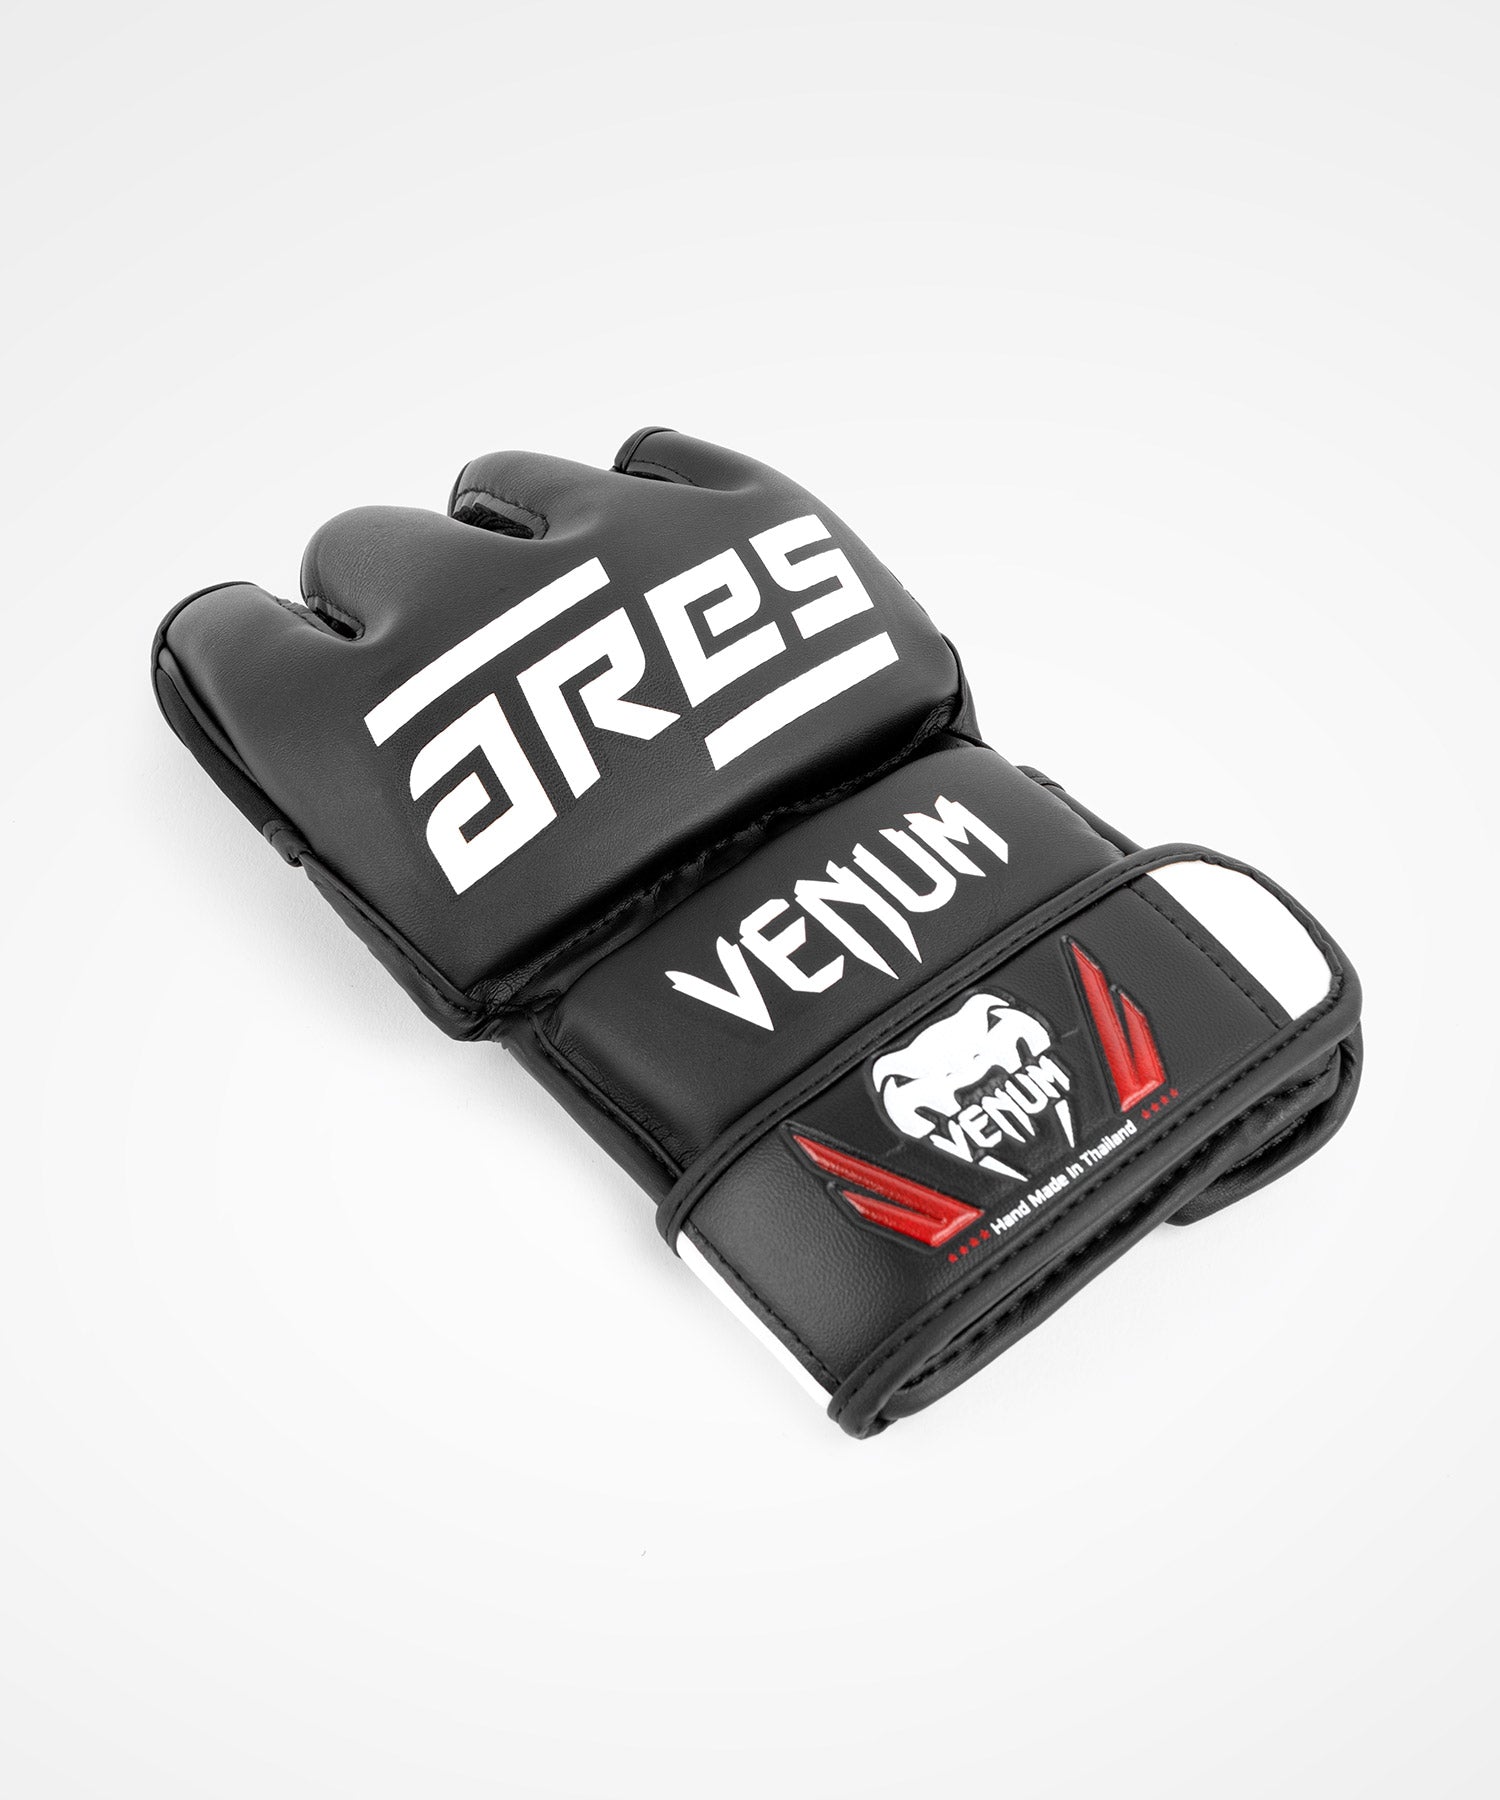 Nos gants Venum Undisputed 2.0 MMA.